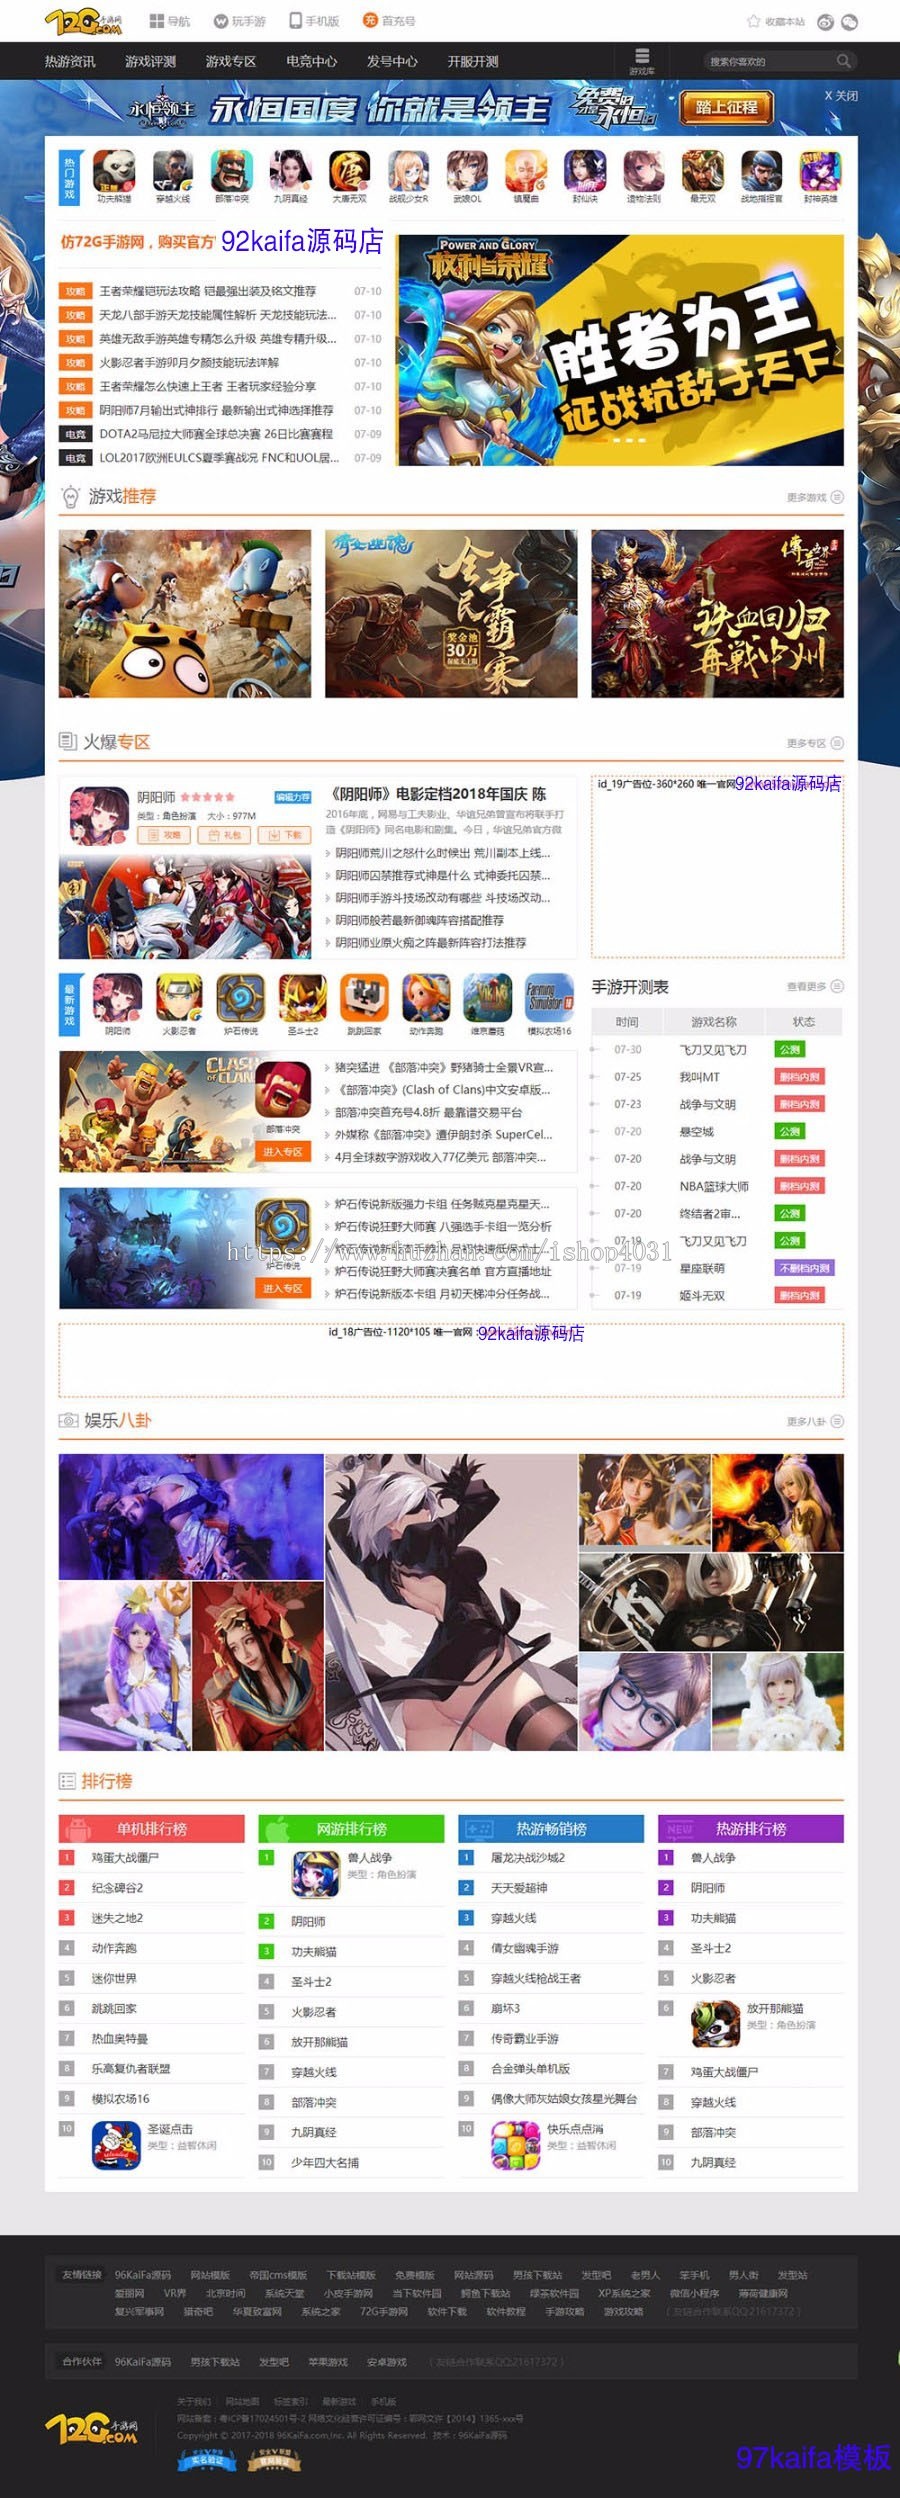 仿《72G手游网》源码 手机游戏门户网站模版 游戏媒体帝国cms内核